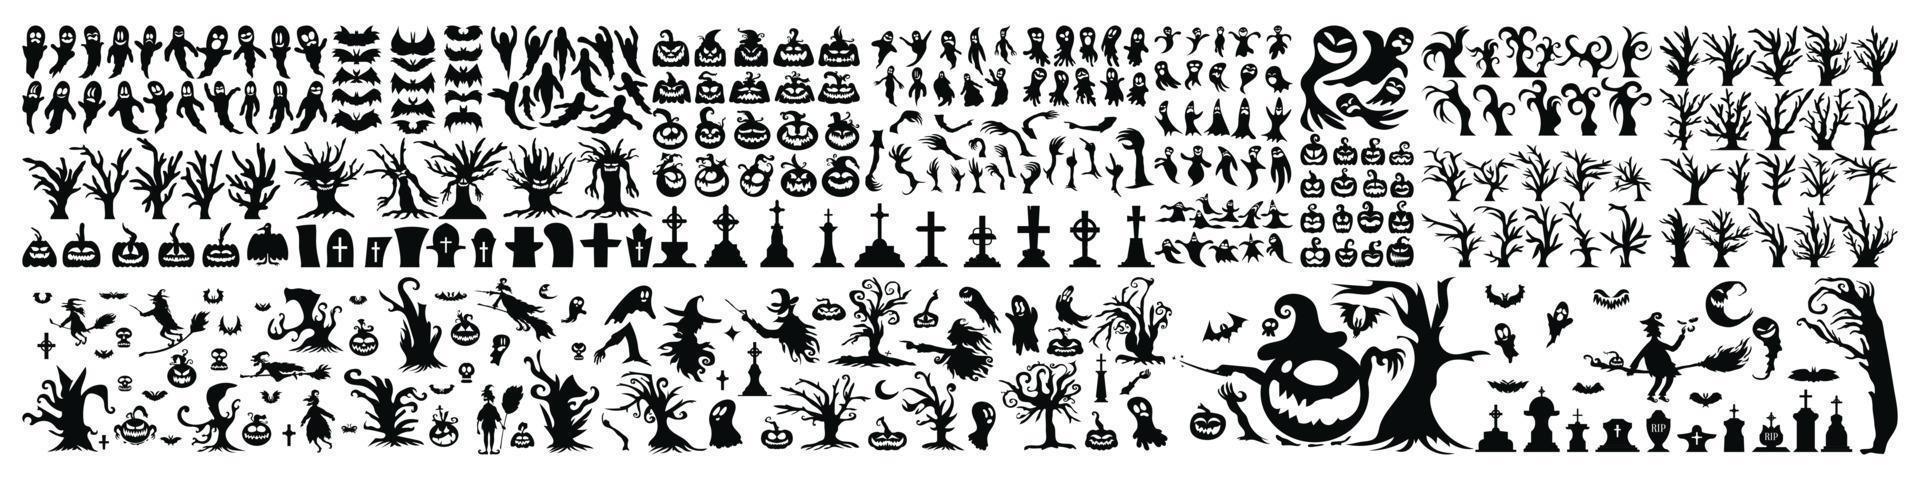 grand ensemble d'icônes et de personnages de silhouette d'halloween. illustration de vecteur d'halloween isolé sur fond blanc. élément d'horreur dessiné à la main